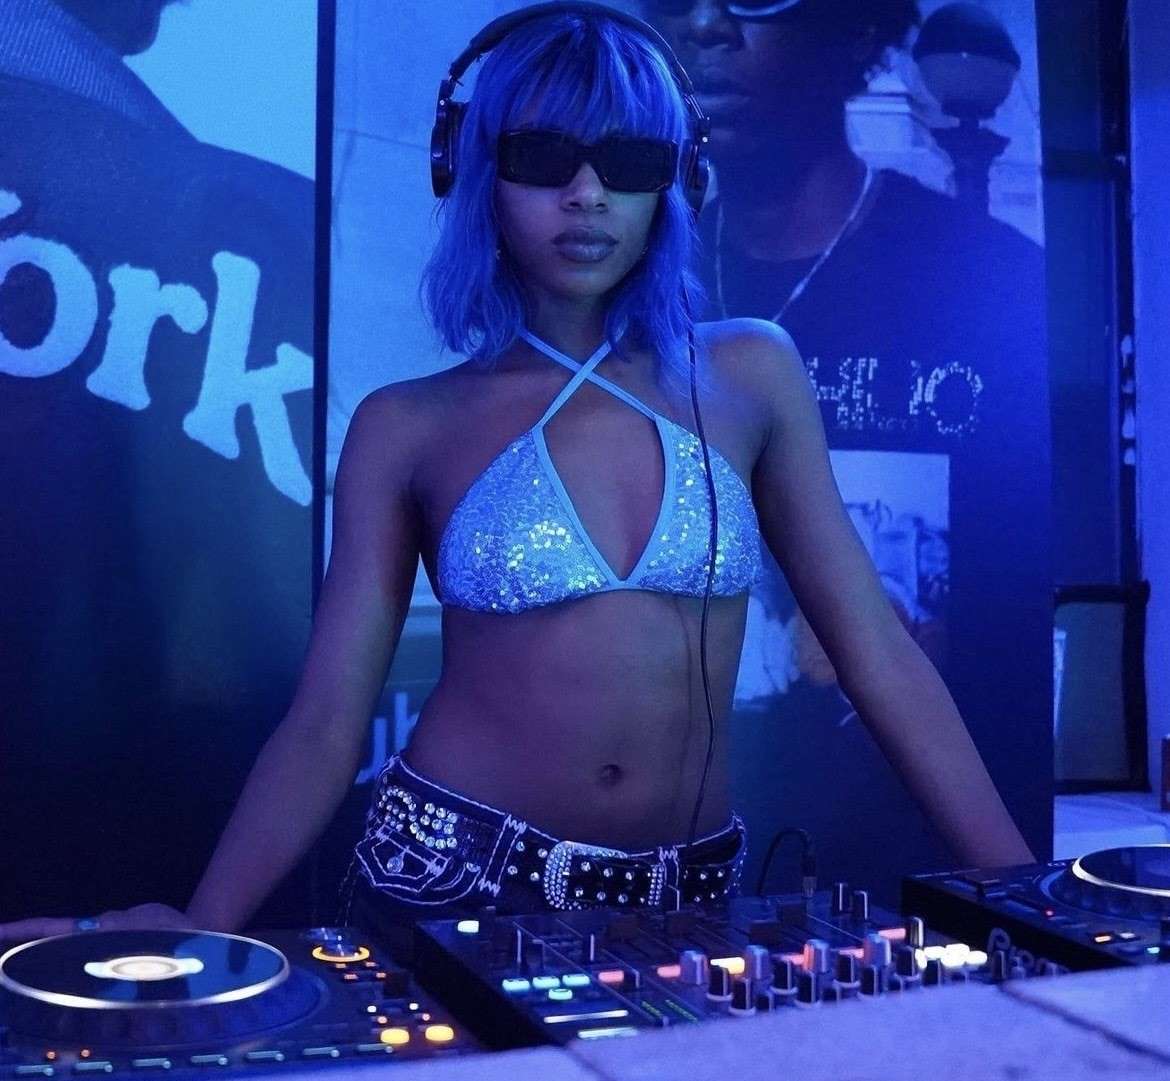 A DJ